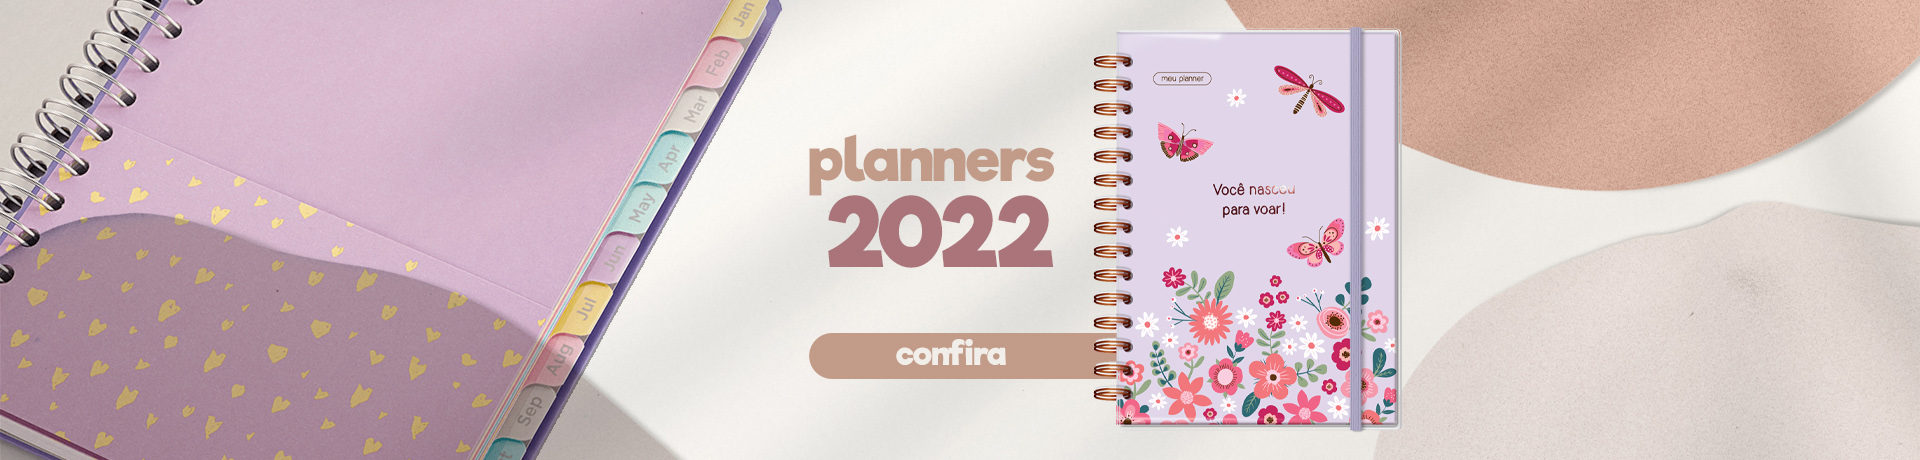 Planners 2022 Full - LDE